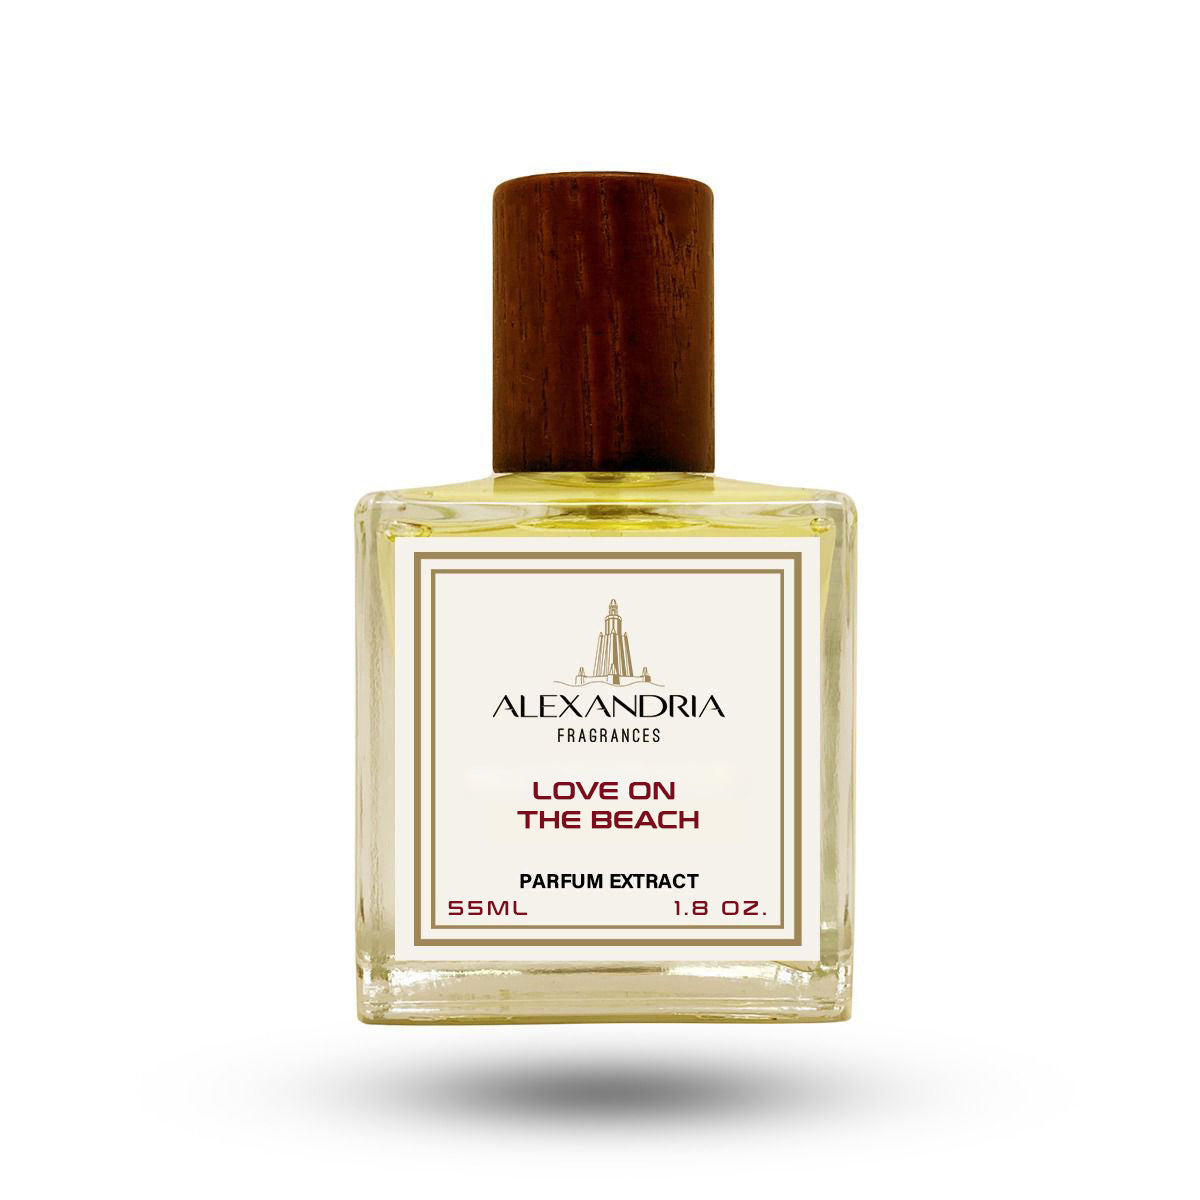 Louis Vuitton Fragrances to Celebrate Love I LOUIS VUITTON​ 